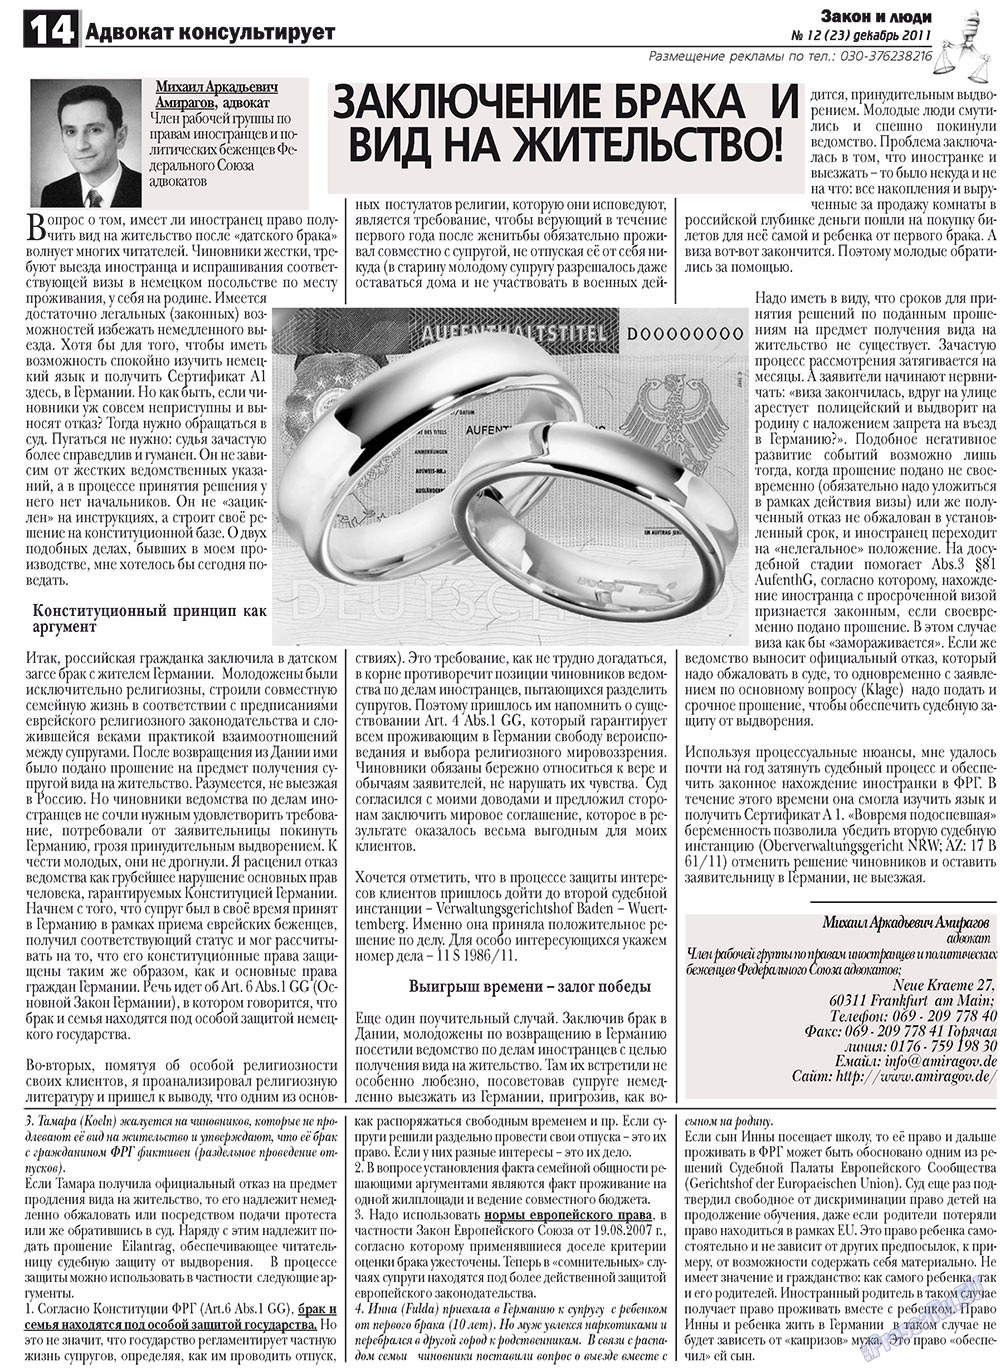 Закон и люди, газета. 2011 №12 стр.14